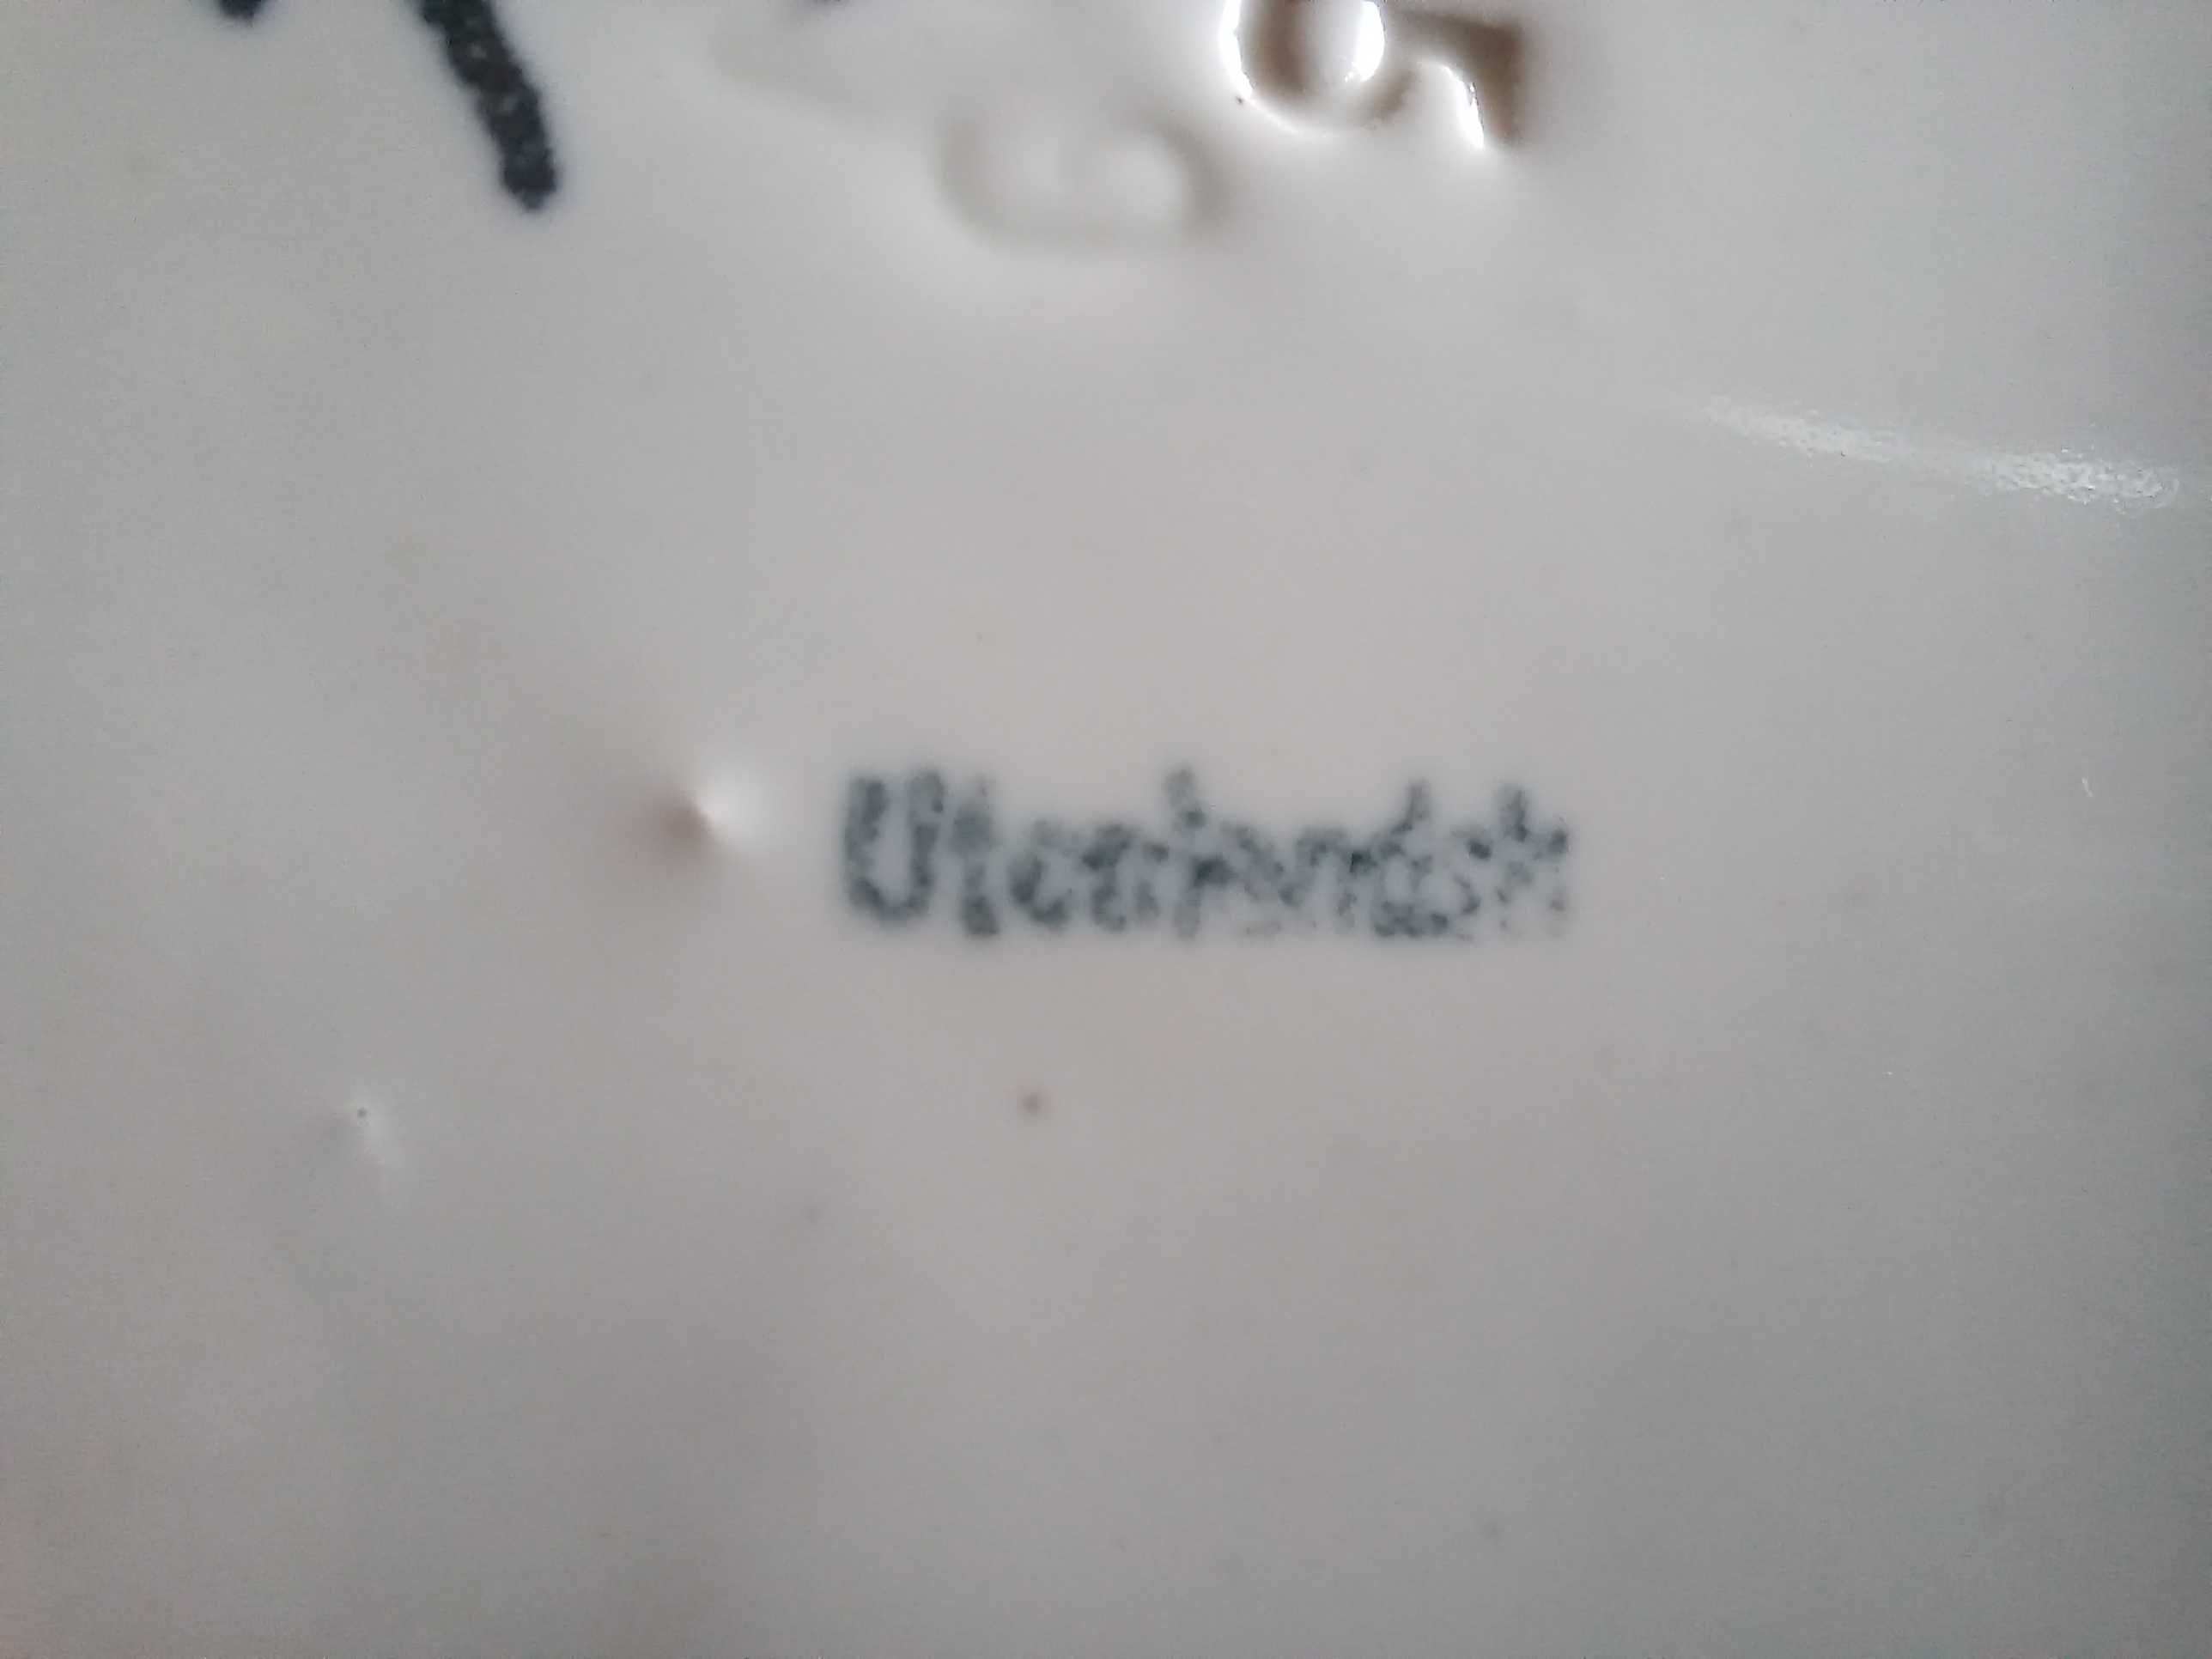 porcelana stary talerz wiekowy ze znakiem "utcakindsh"